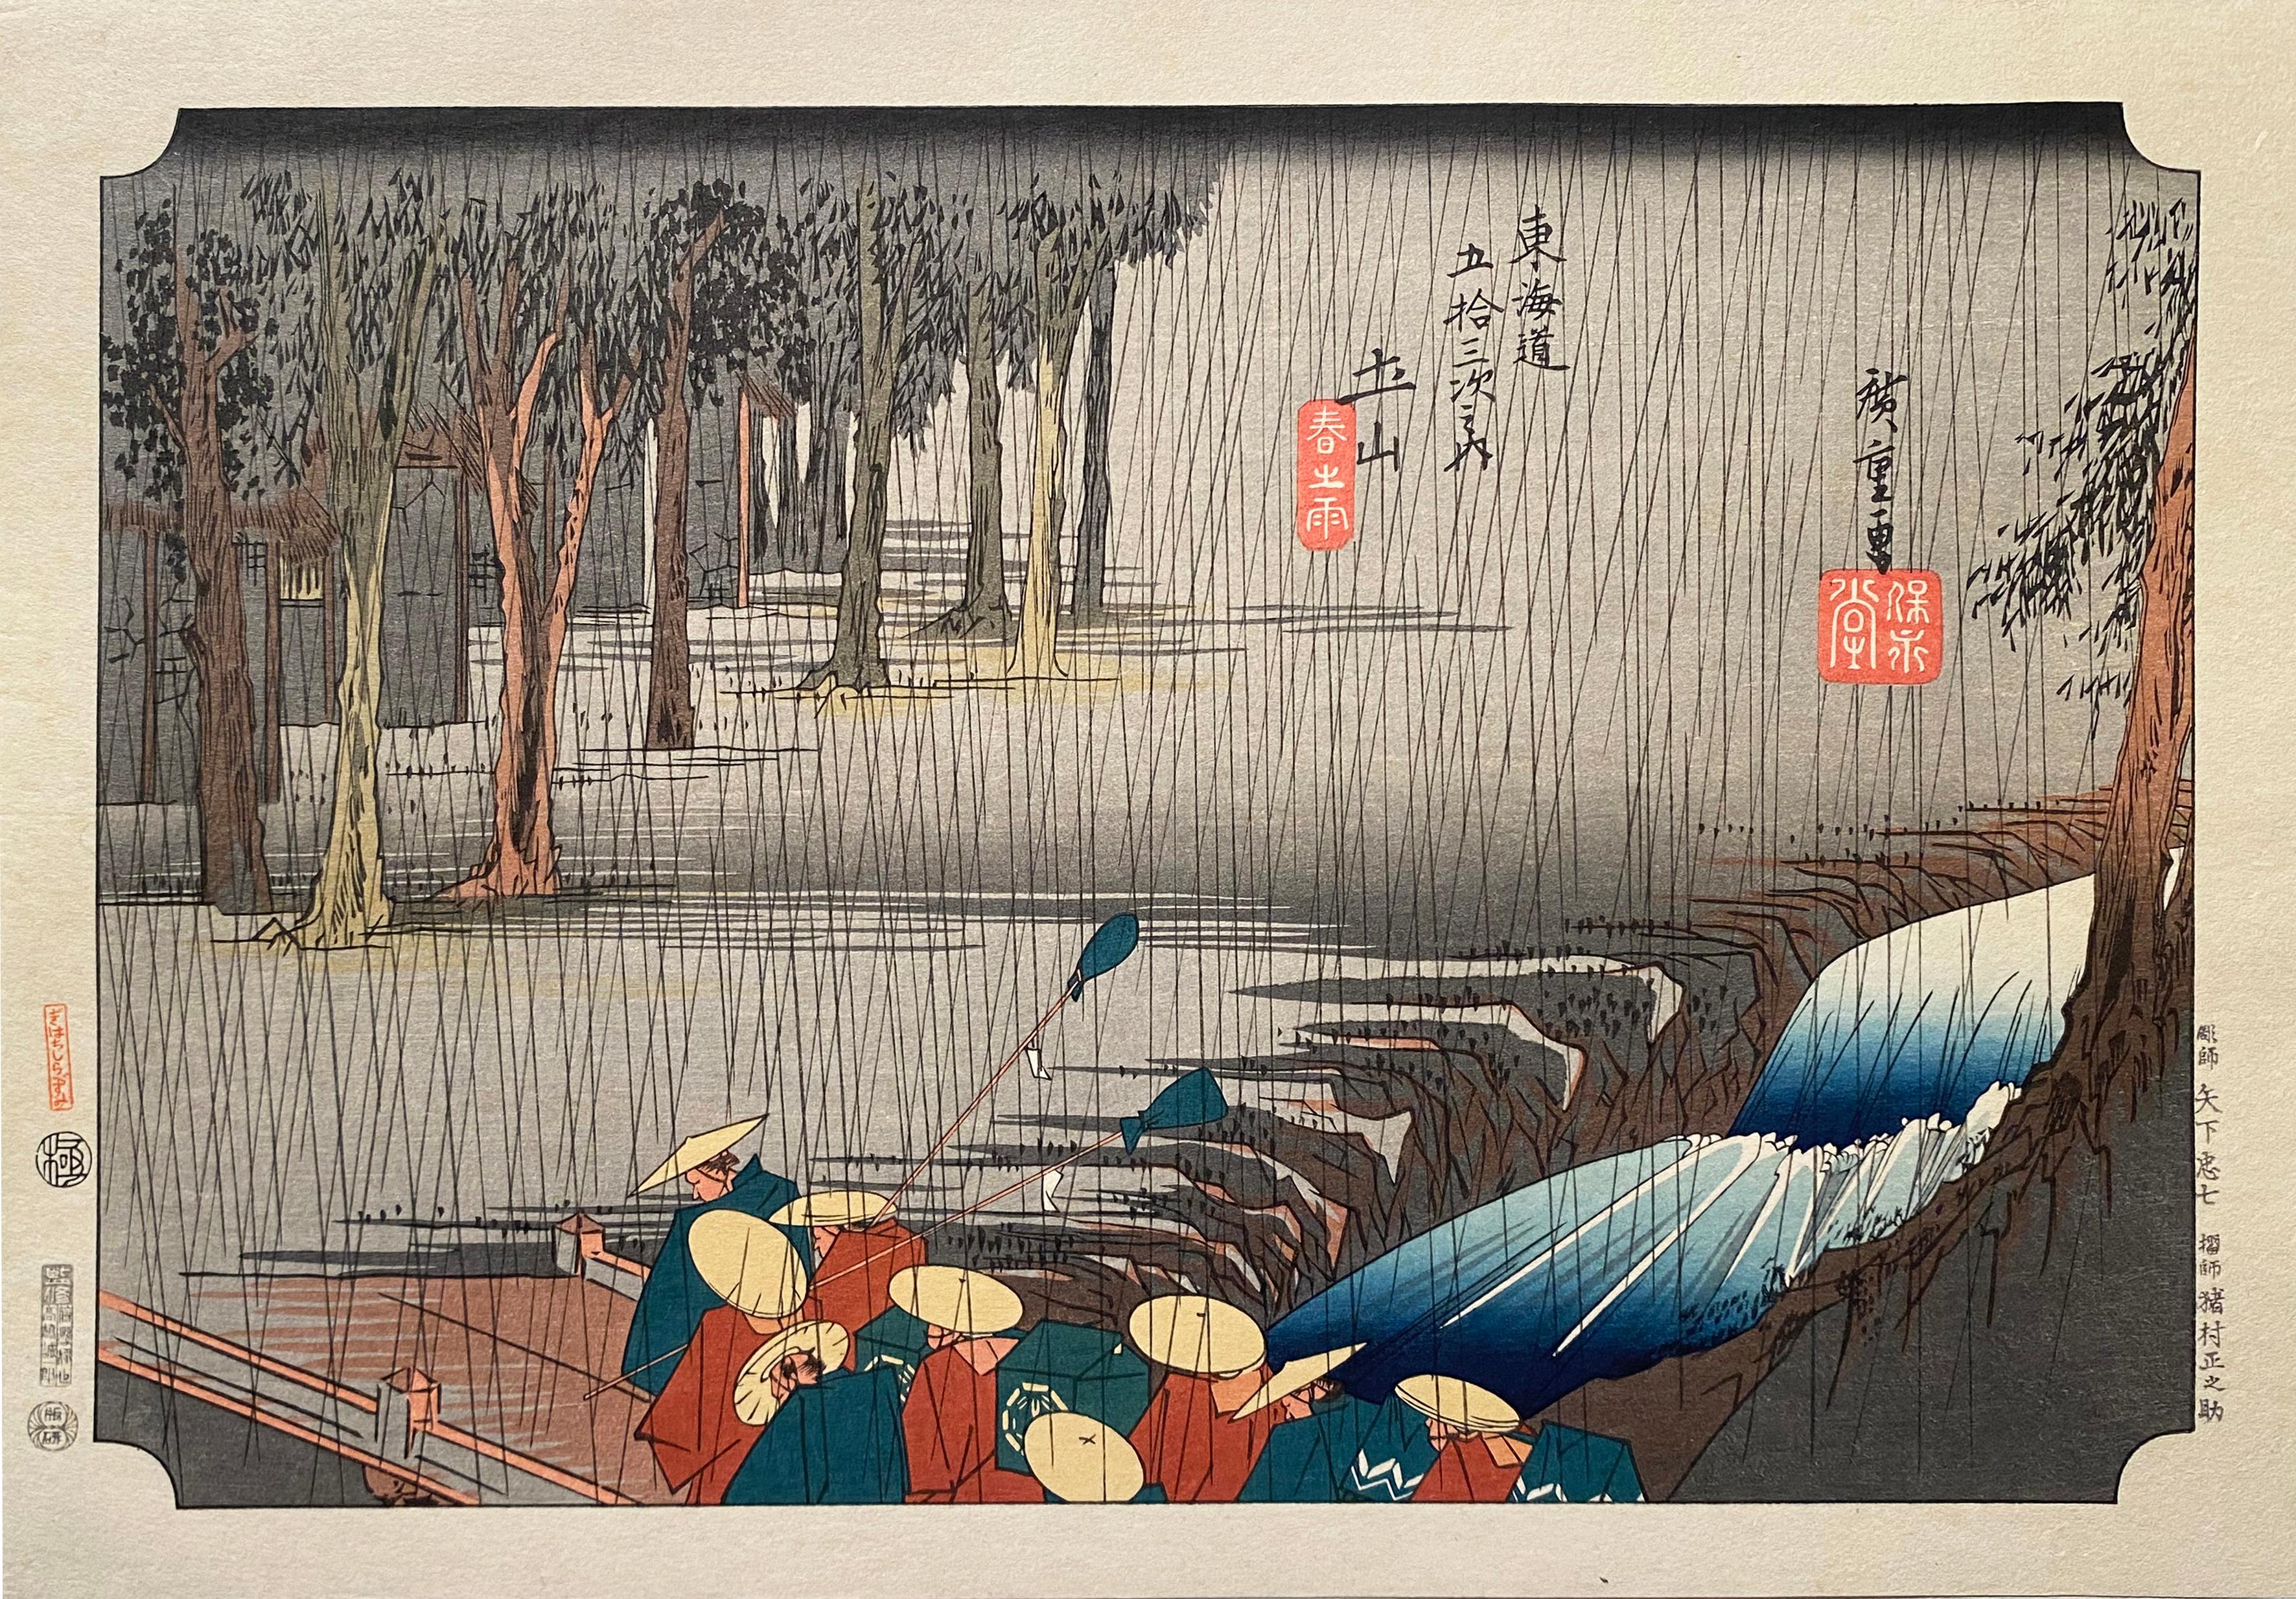 'A View of Tsuchiyama', After Utagawa Hiroshige 歌川廣重, Ukiyo-e Woodblock, Tokaido